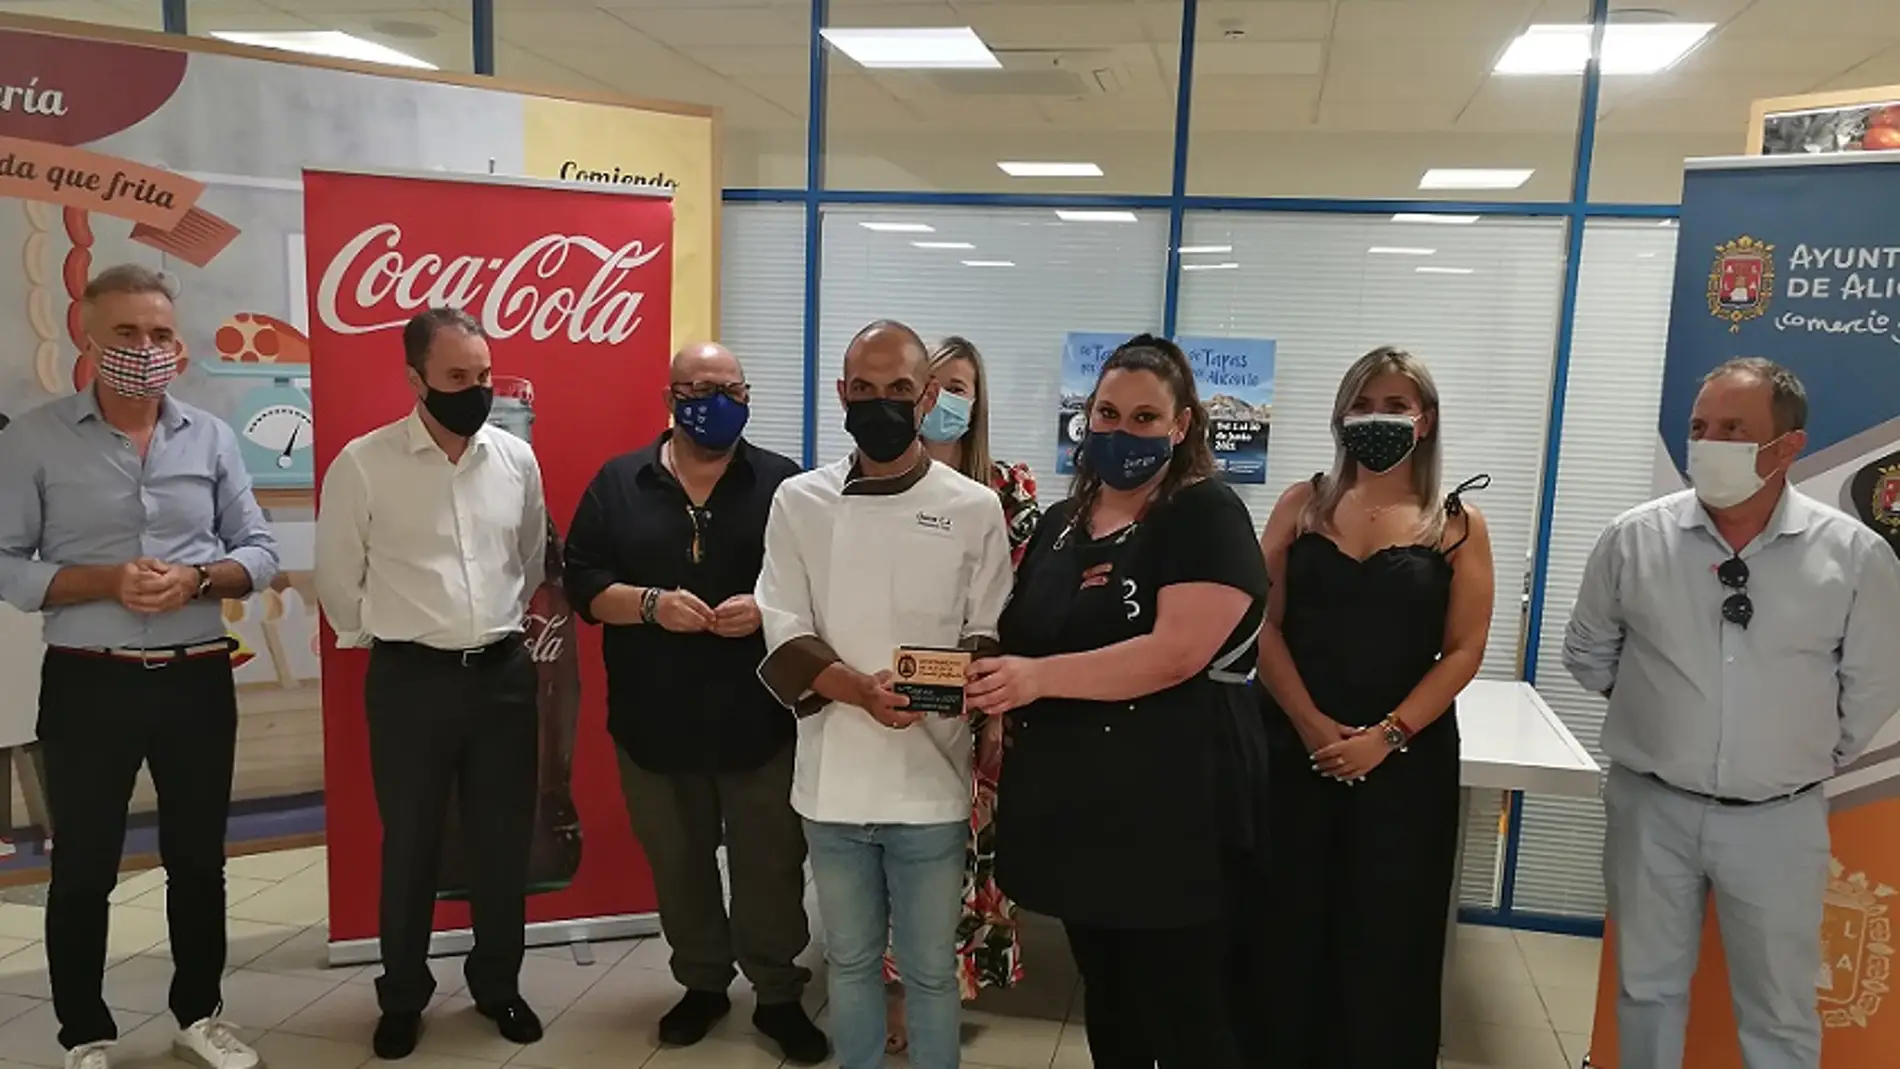 Ganadores del concurso "Tapas por Alicante"